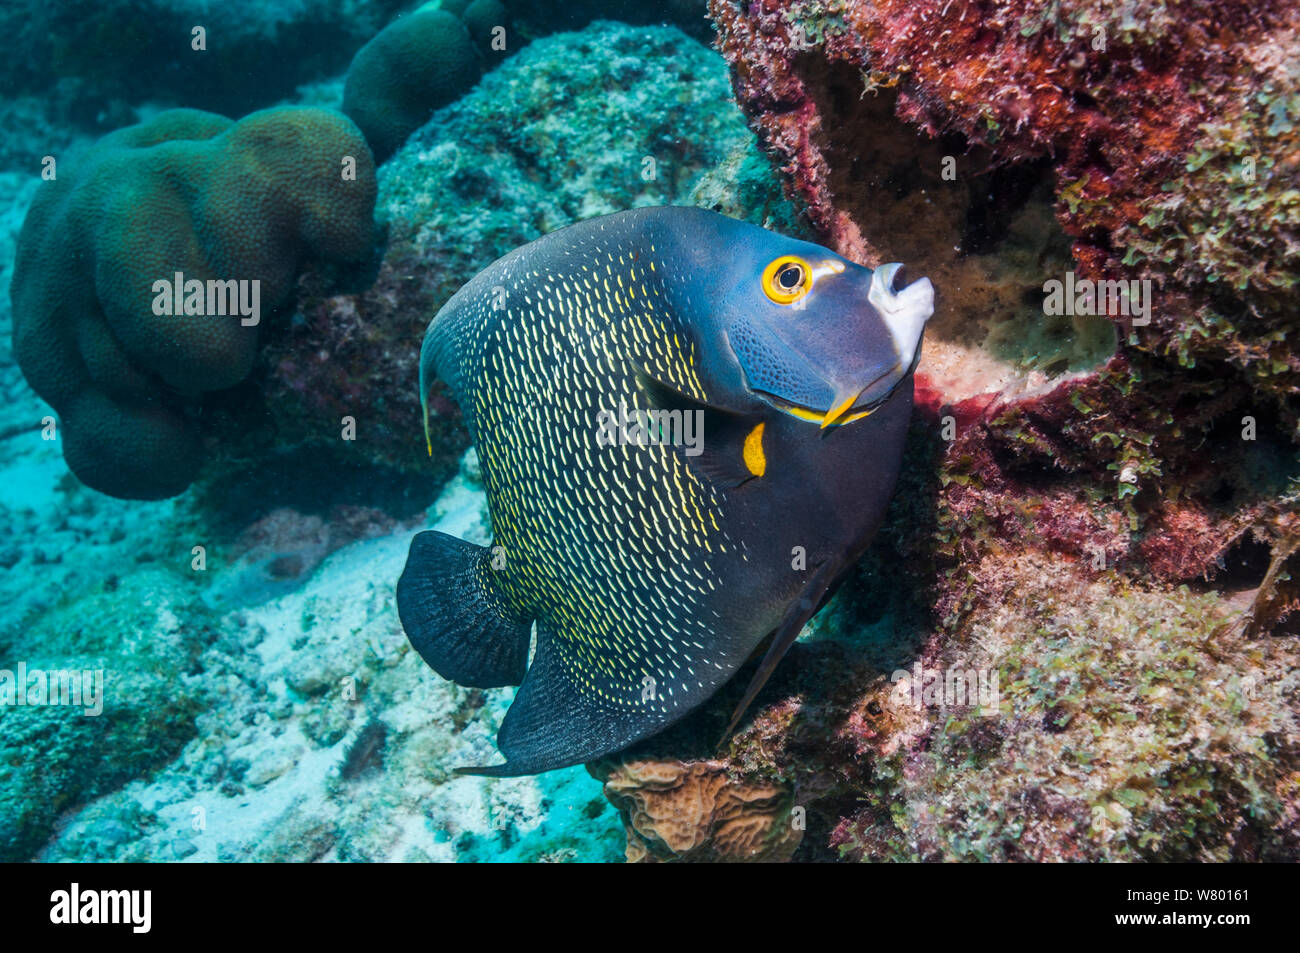 El pez ángel francés (Pomacanthus paru) alimentándose de la esponja. Bonaire, Antillas Neerlandesas, Caribe, Océano Atlántico. Foto de stock